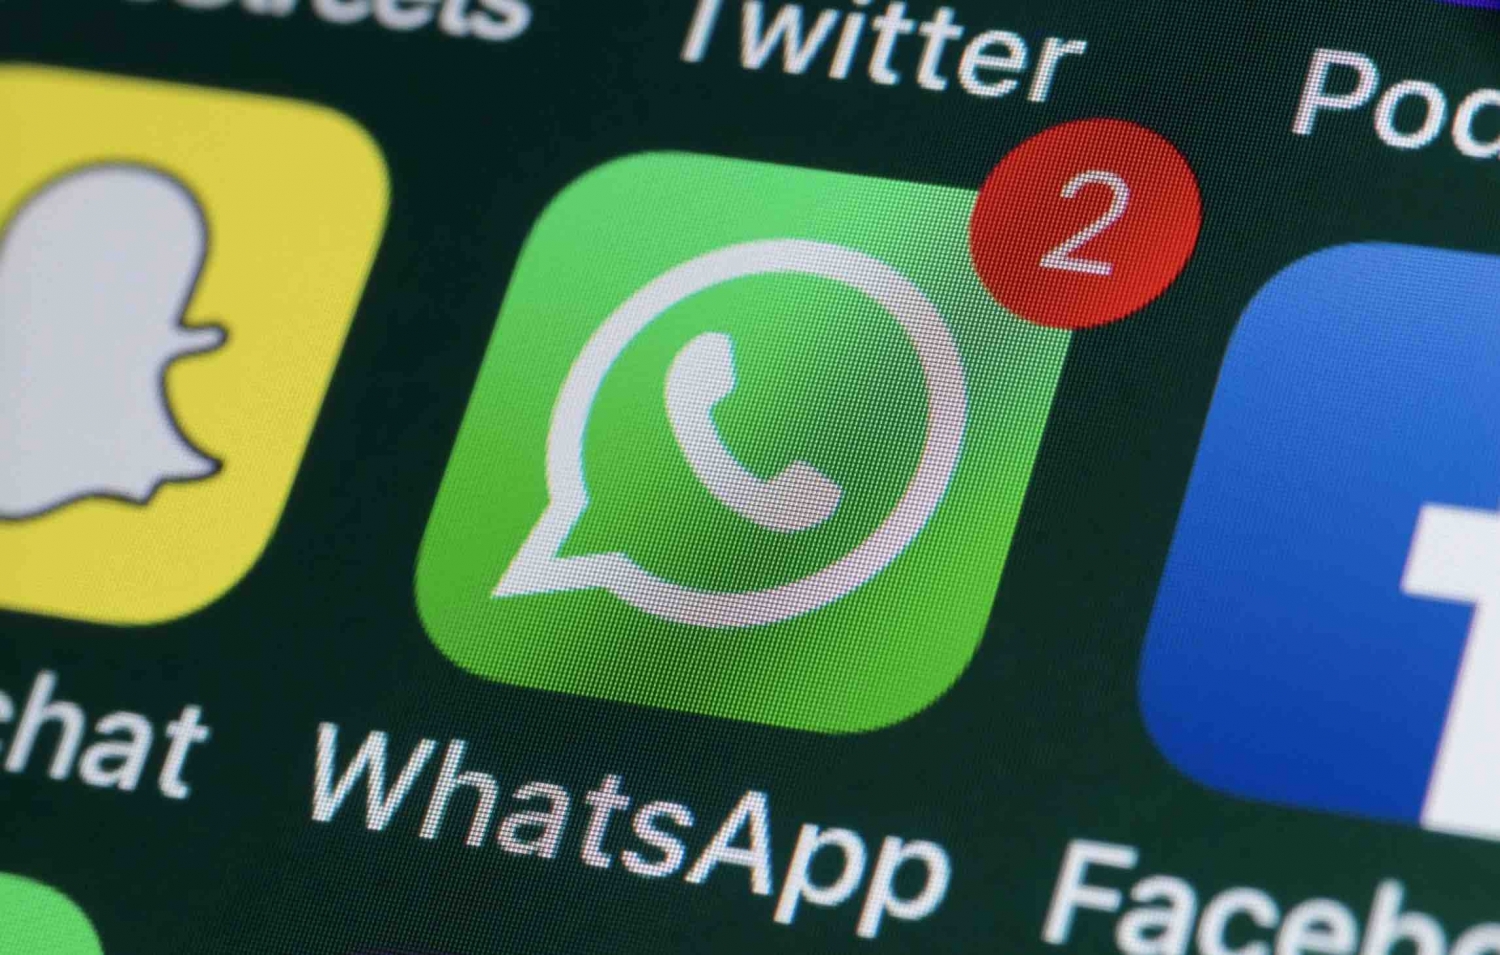 WhatsApp cập nhật thêm nhiều tính năng bảo mật quyền riêng tư cho người dùng